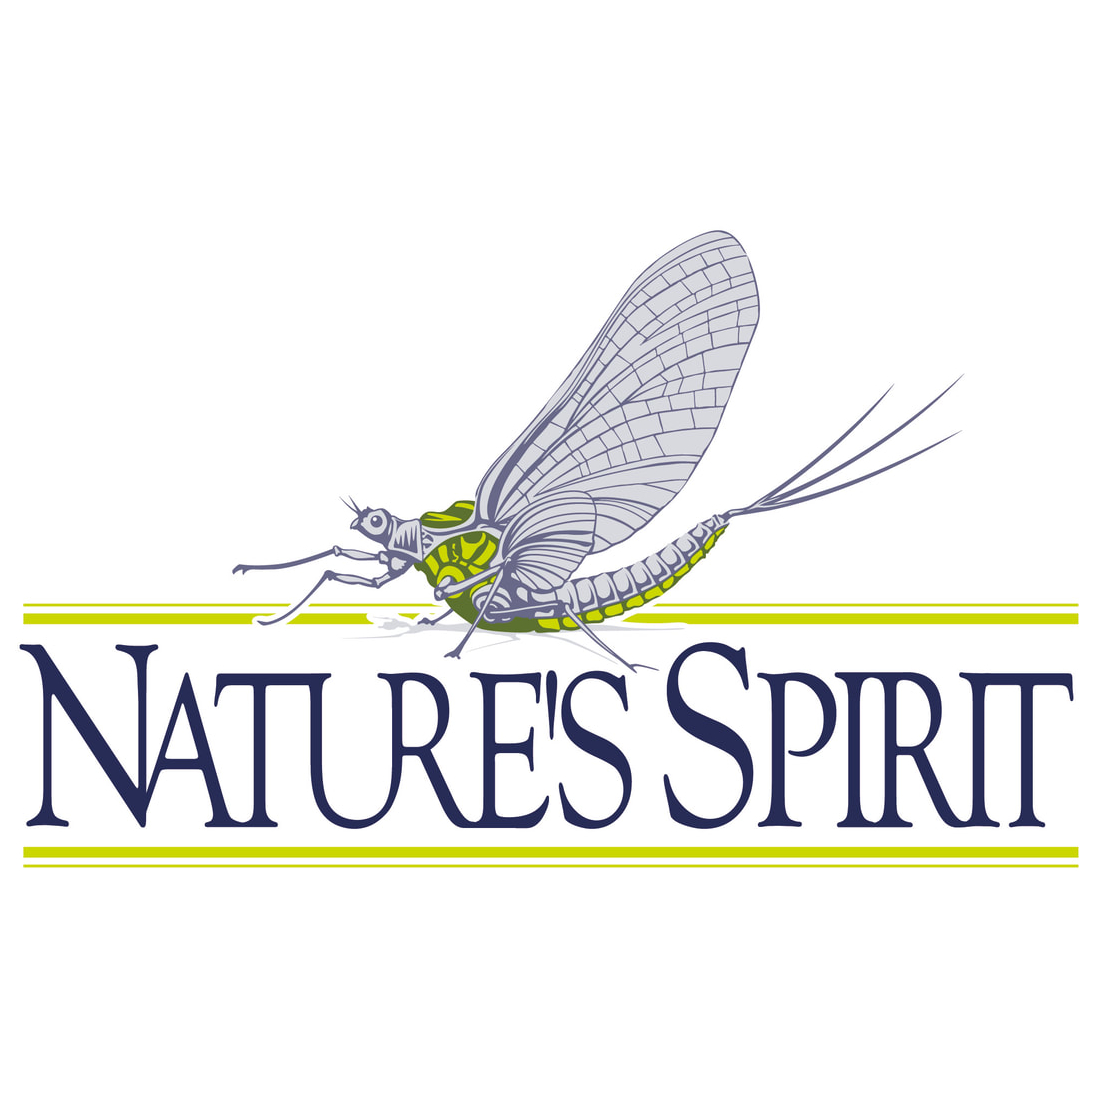 Natures Spirit